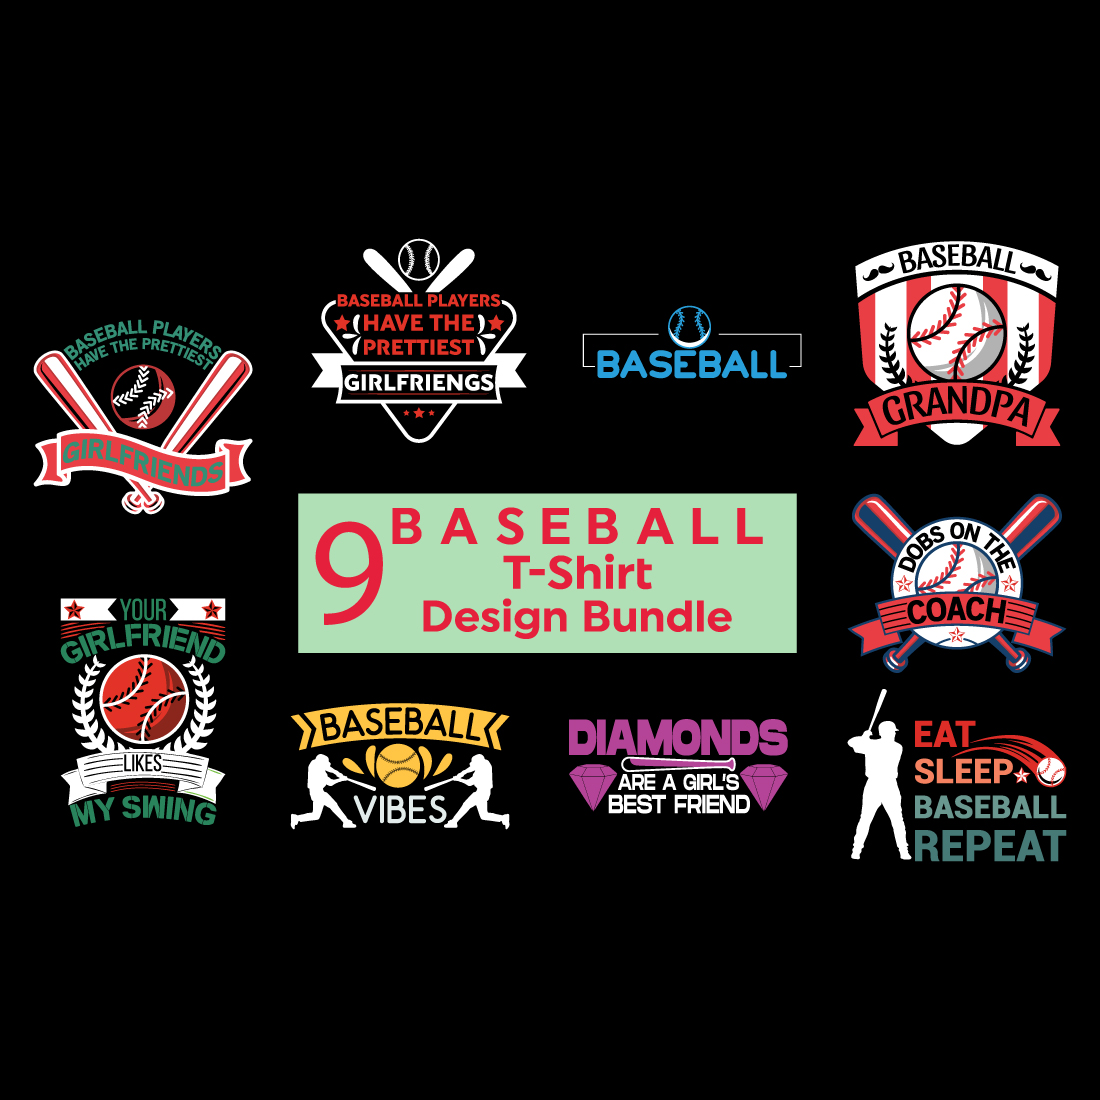 Baseball T-Shirt Design cover image.